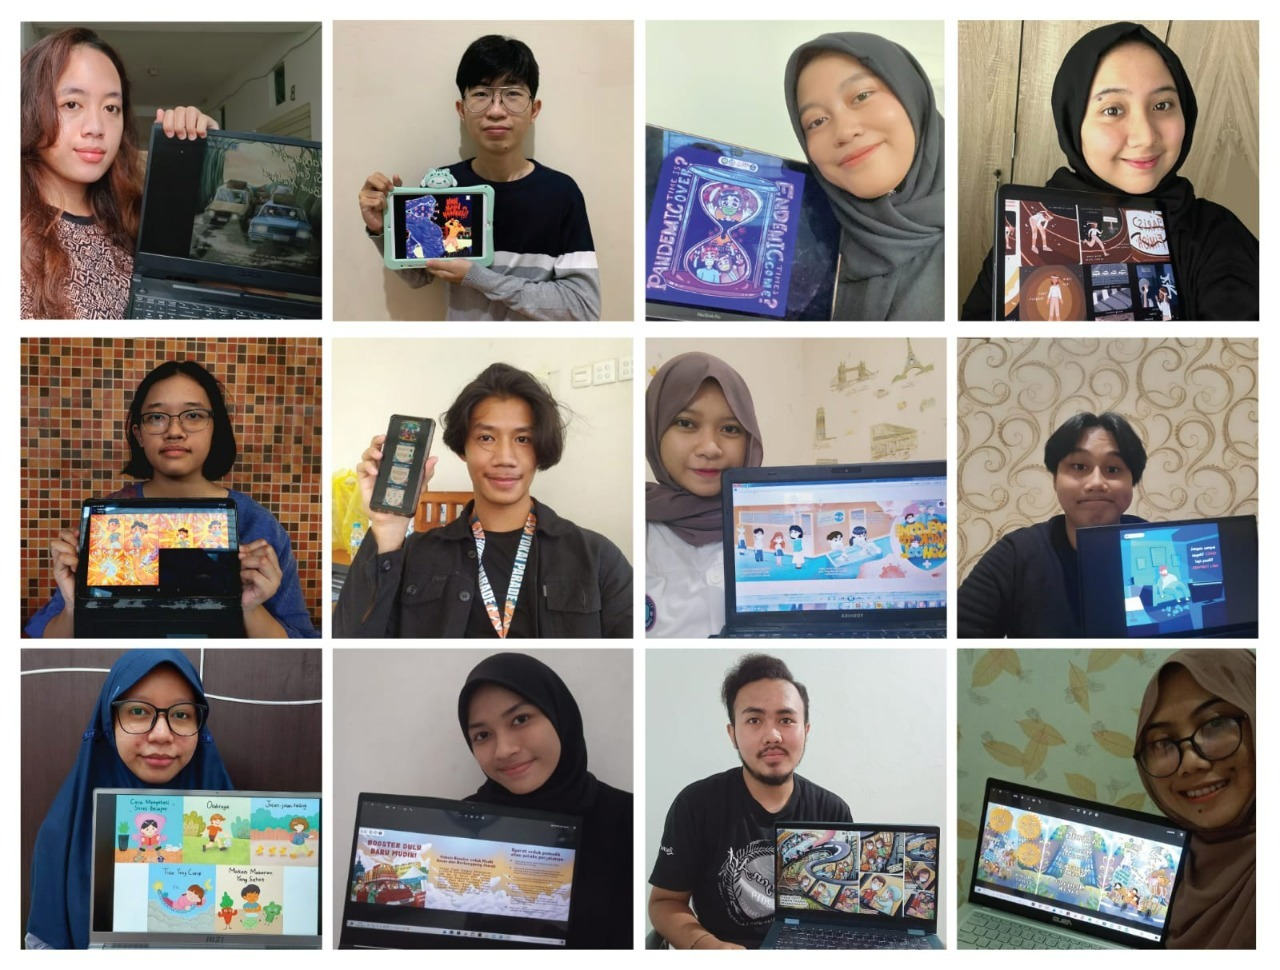 Mahasiswa Departemen DKV ITS dengan hasil karya masing-masing berupa Poster Ilustrasi dan Komik Digital